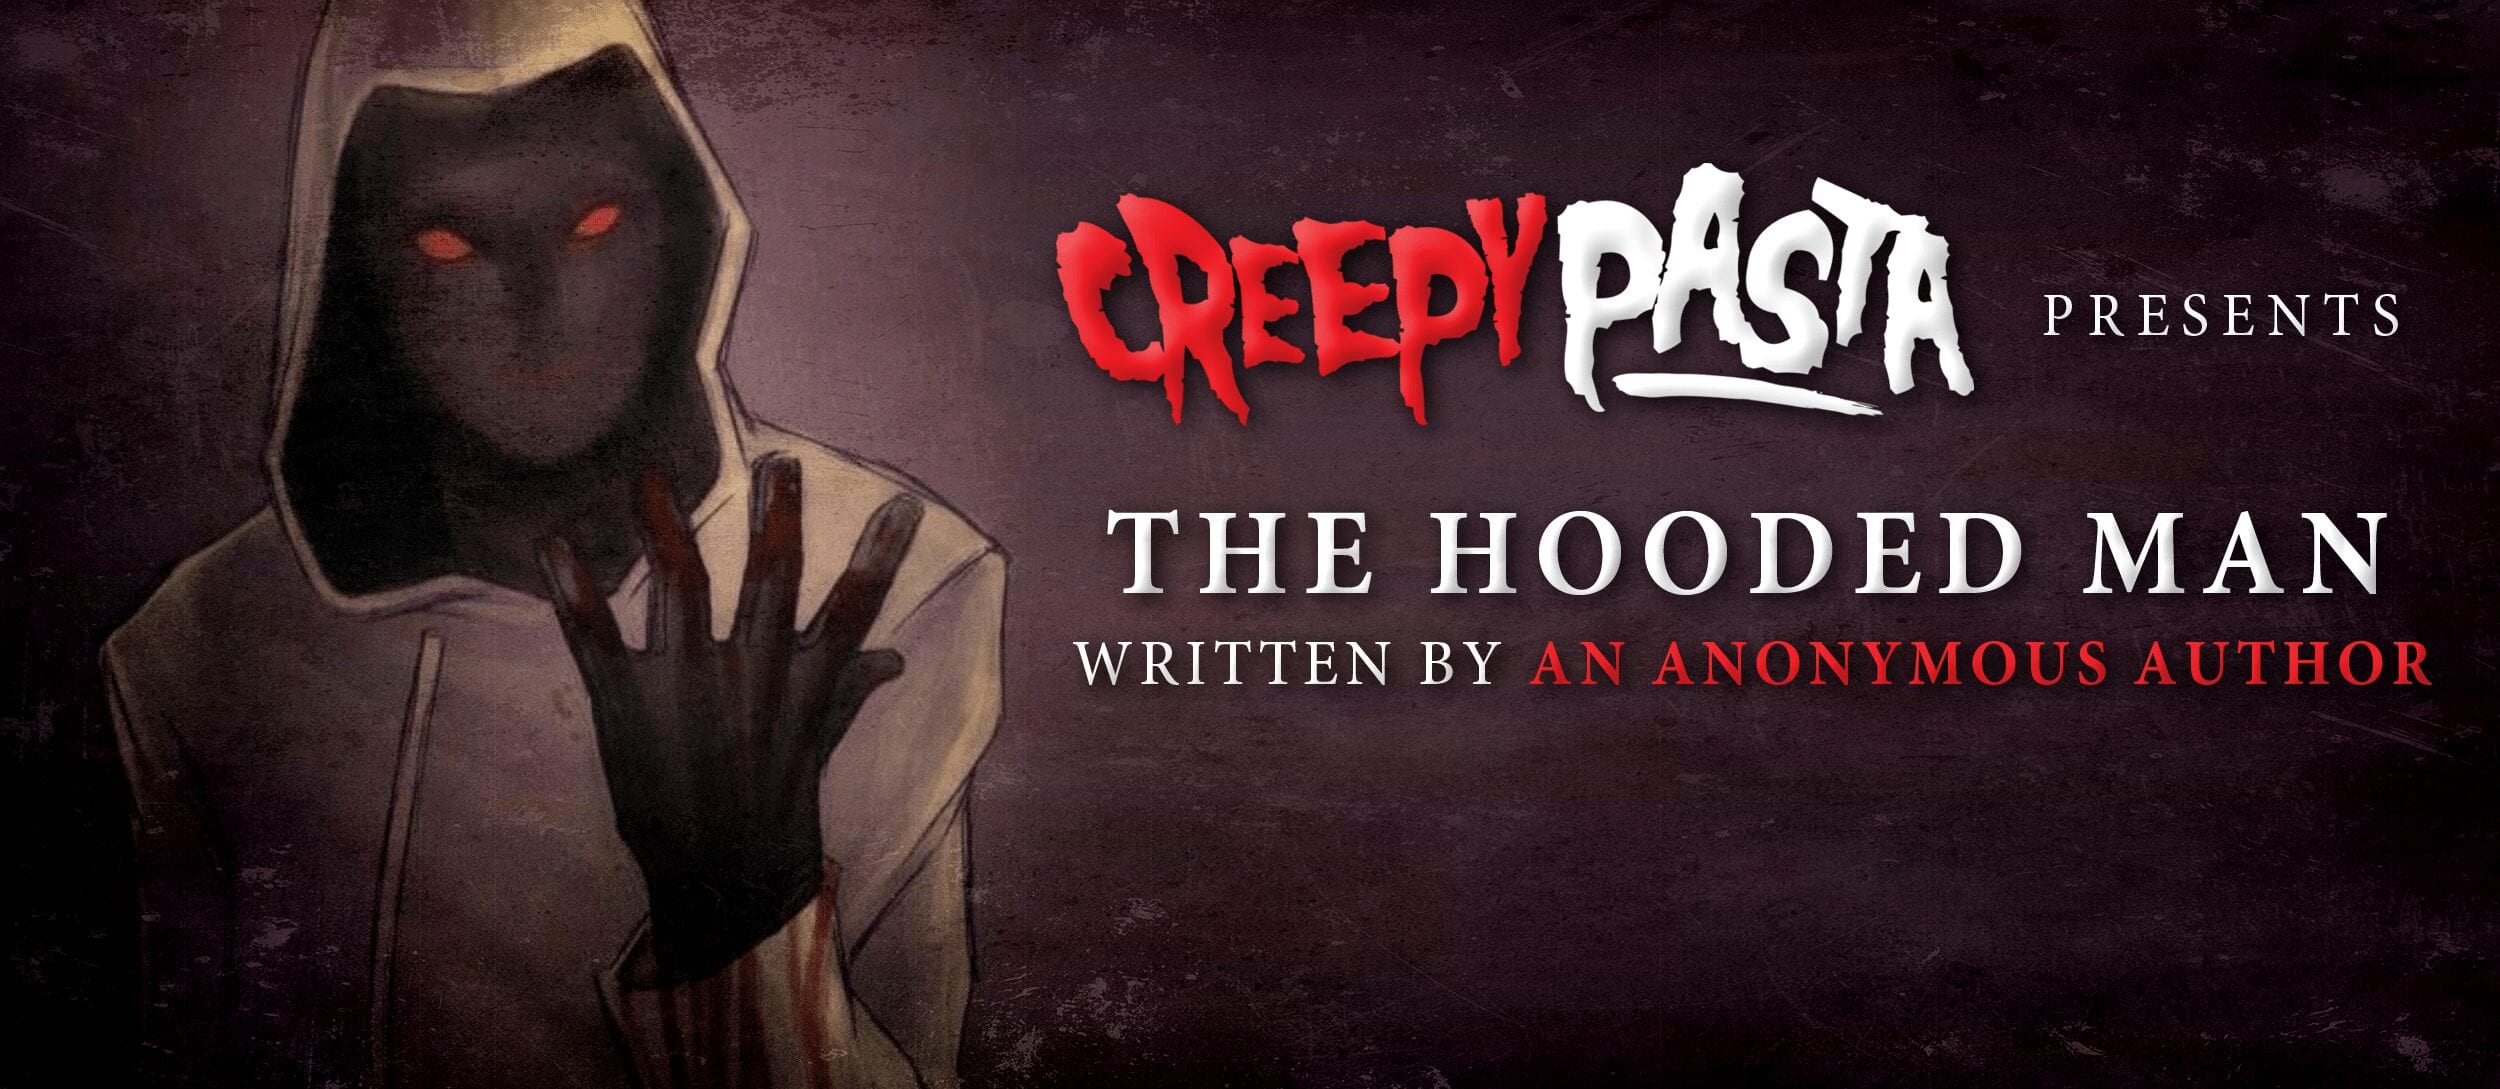 Hoodie STORY Creepypasta + Drawing (The Hooded Man Origin) 